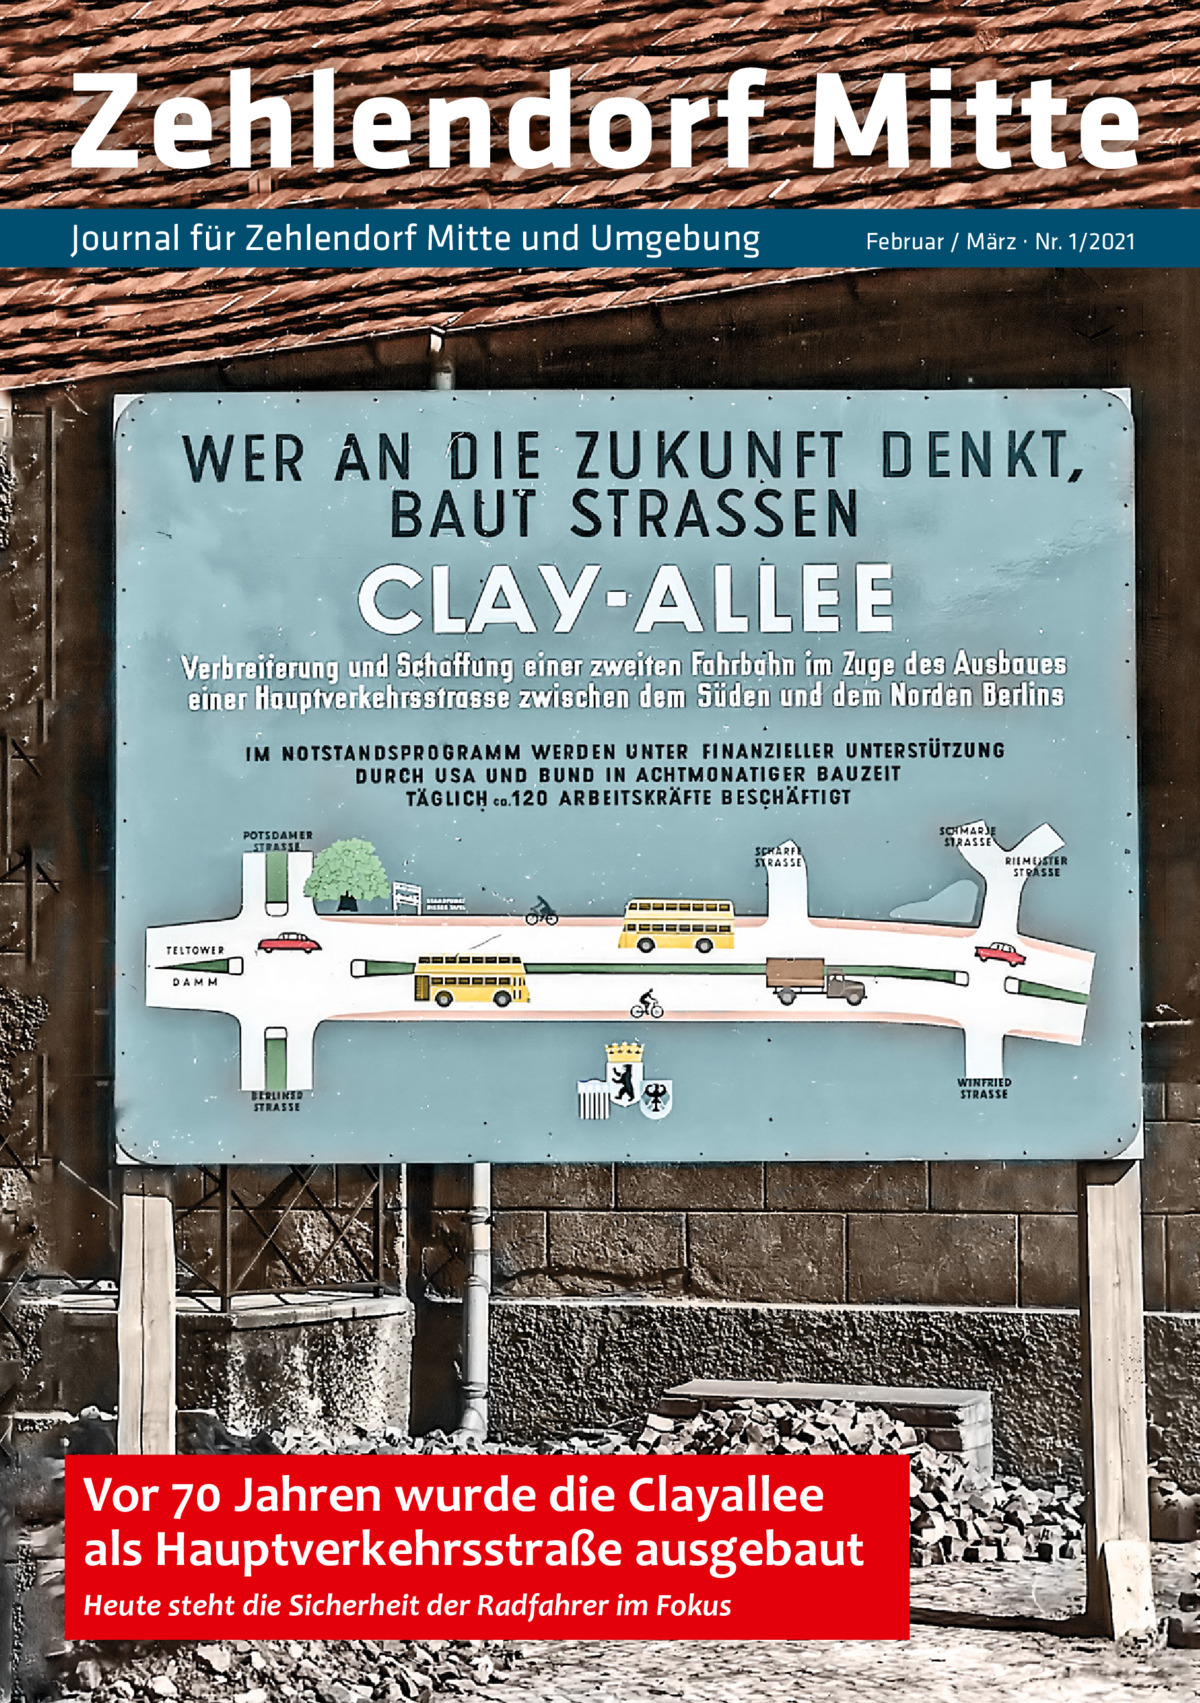 Zehlendorf Mitte Journal für Zehlendorf Mitte und Umgebung  Vor 70 Jahren wurde die Clayallee als Hauptverkehrsstraße ausgebaut Heute steht die Sicherheit der Radfahrer im Fokus  Februar / März · Nr. 1/2021